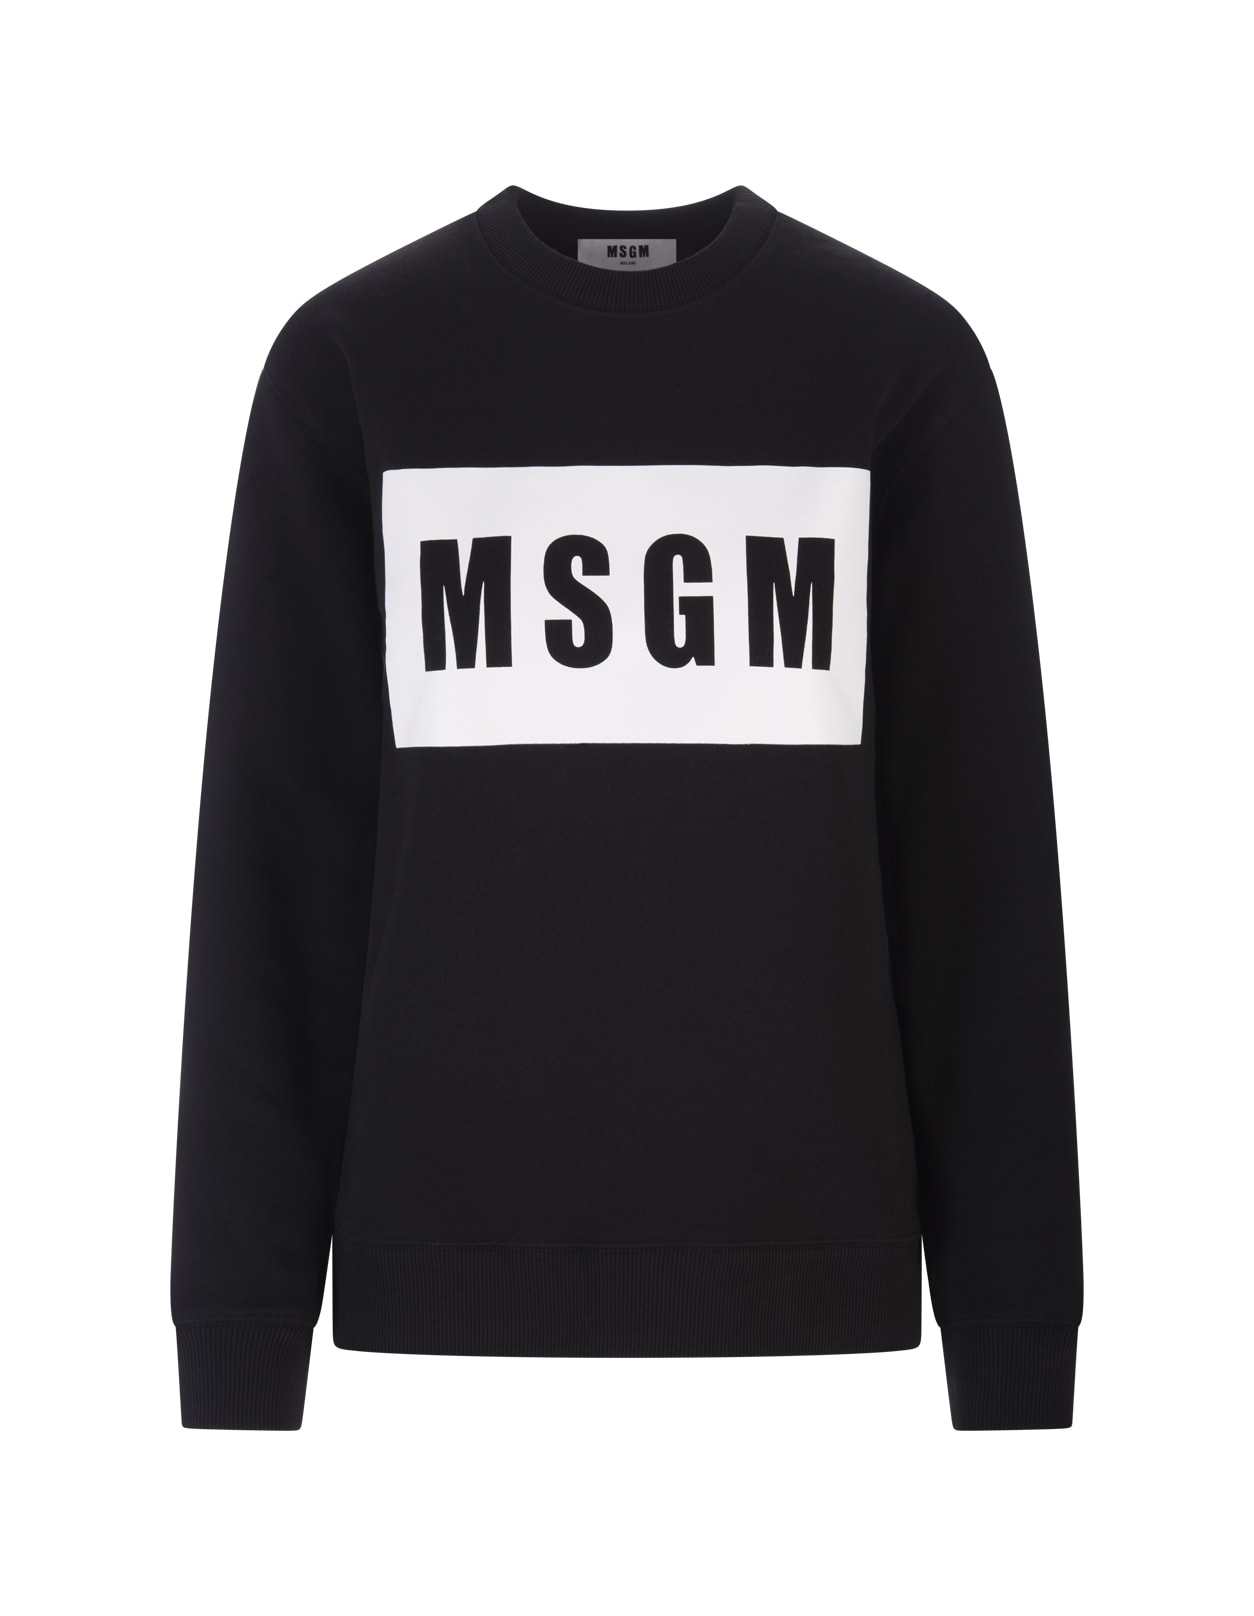 MSGM Woman Black Sweatshirt With White Logo Box